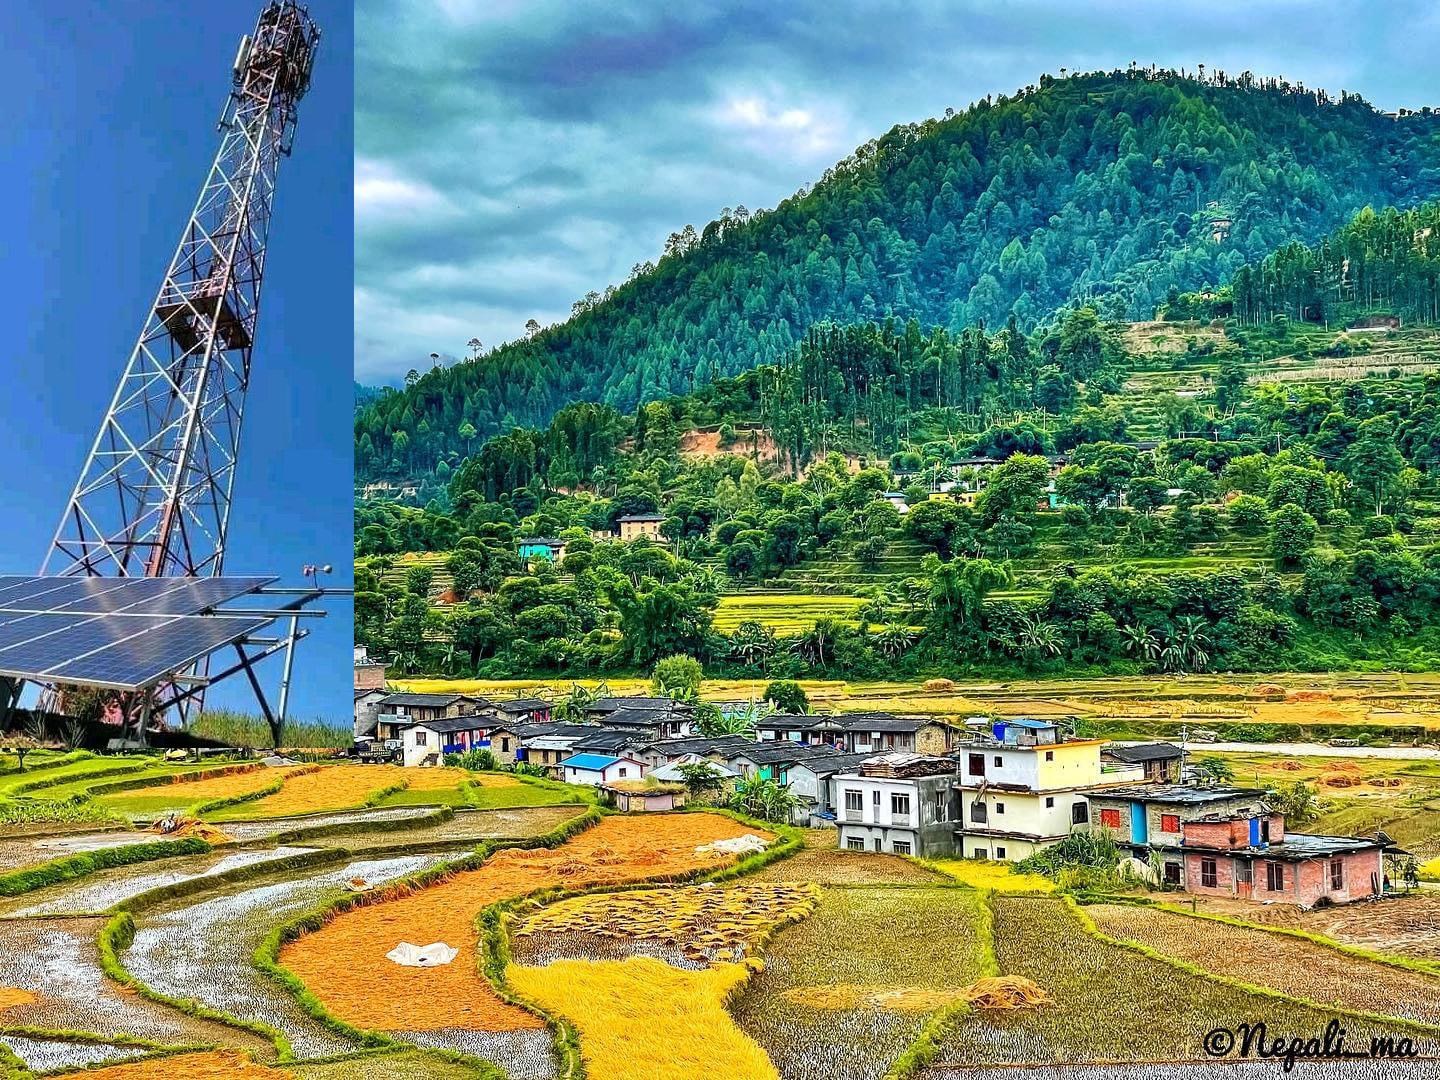 चौफा र आसपासका क्षेत्रमा नेपाल टेलिकमको सेवा सुचारु